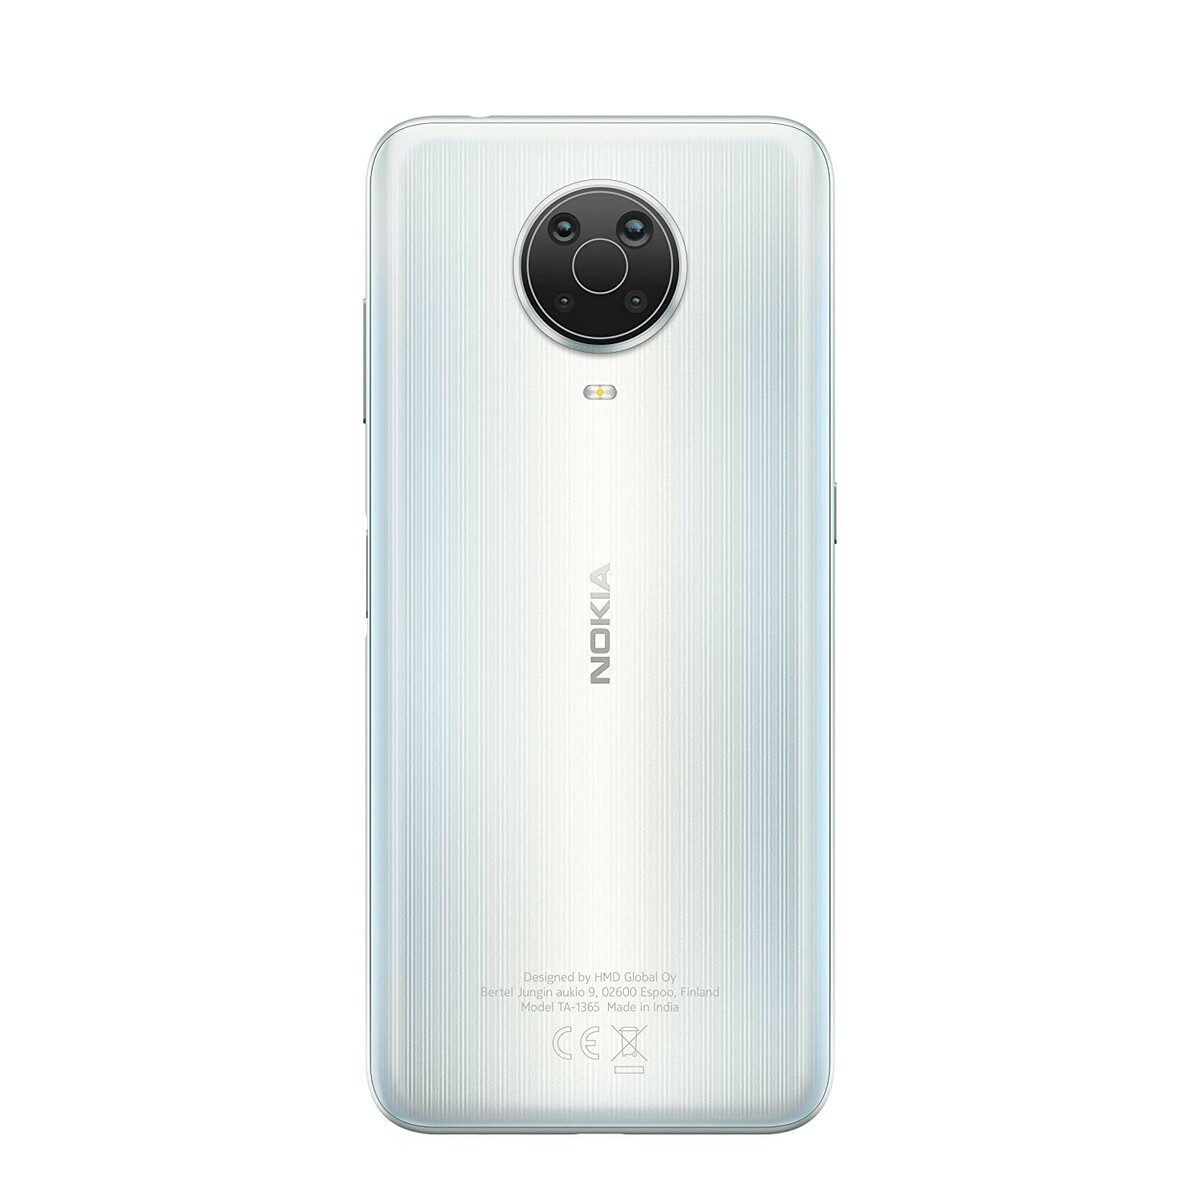 Nokia G20 1365 4GB/64GB Silver